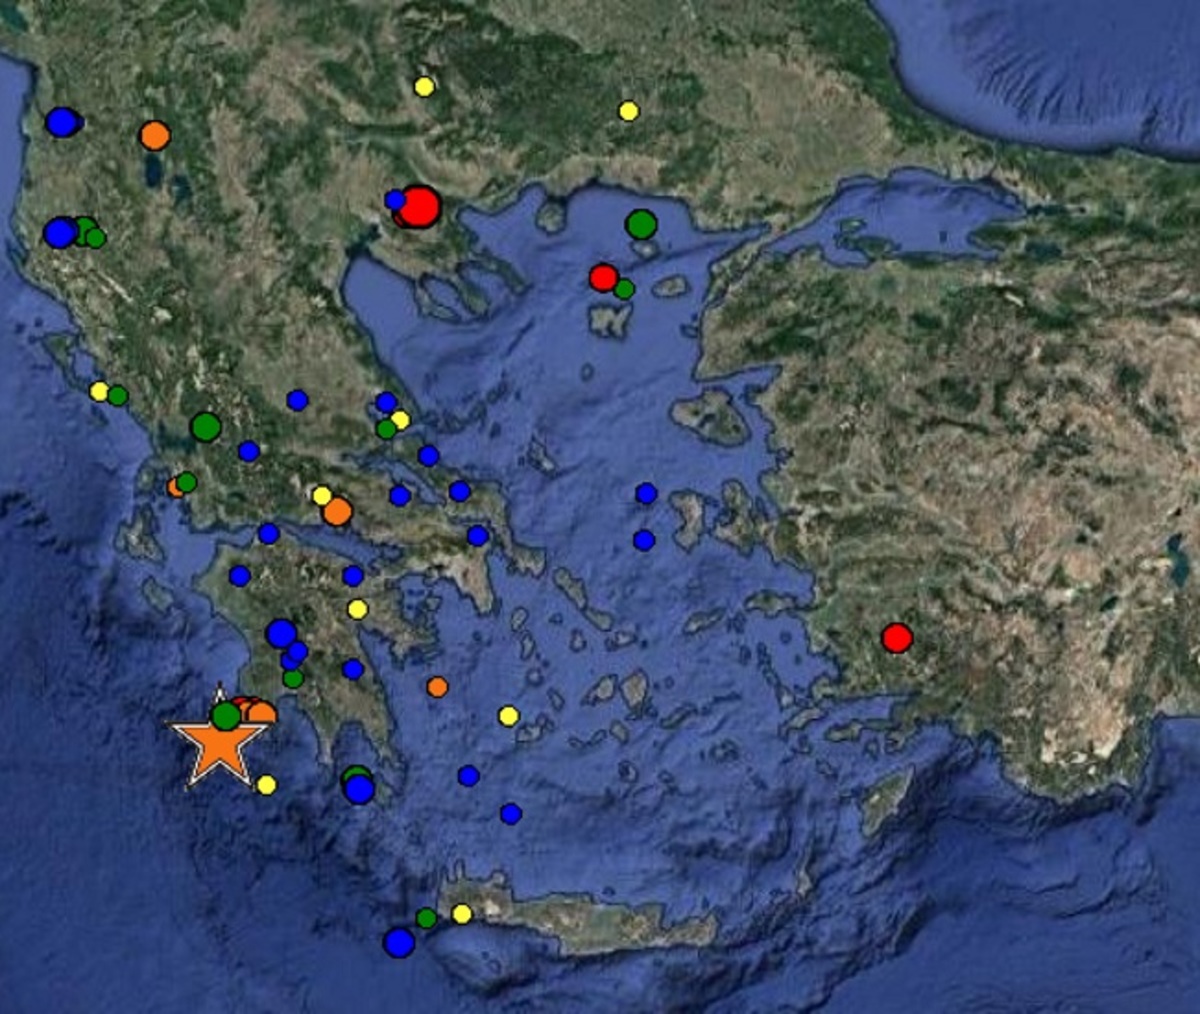 Σεισμοί στη Θεσσαλονίκη - Οι εκτιμήσεις των σεισμολόγων μετά τα 4,2 Ρίχτερ [vids]